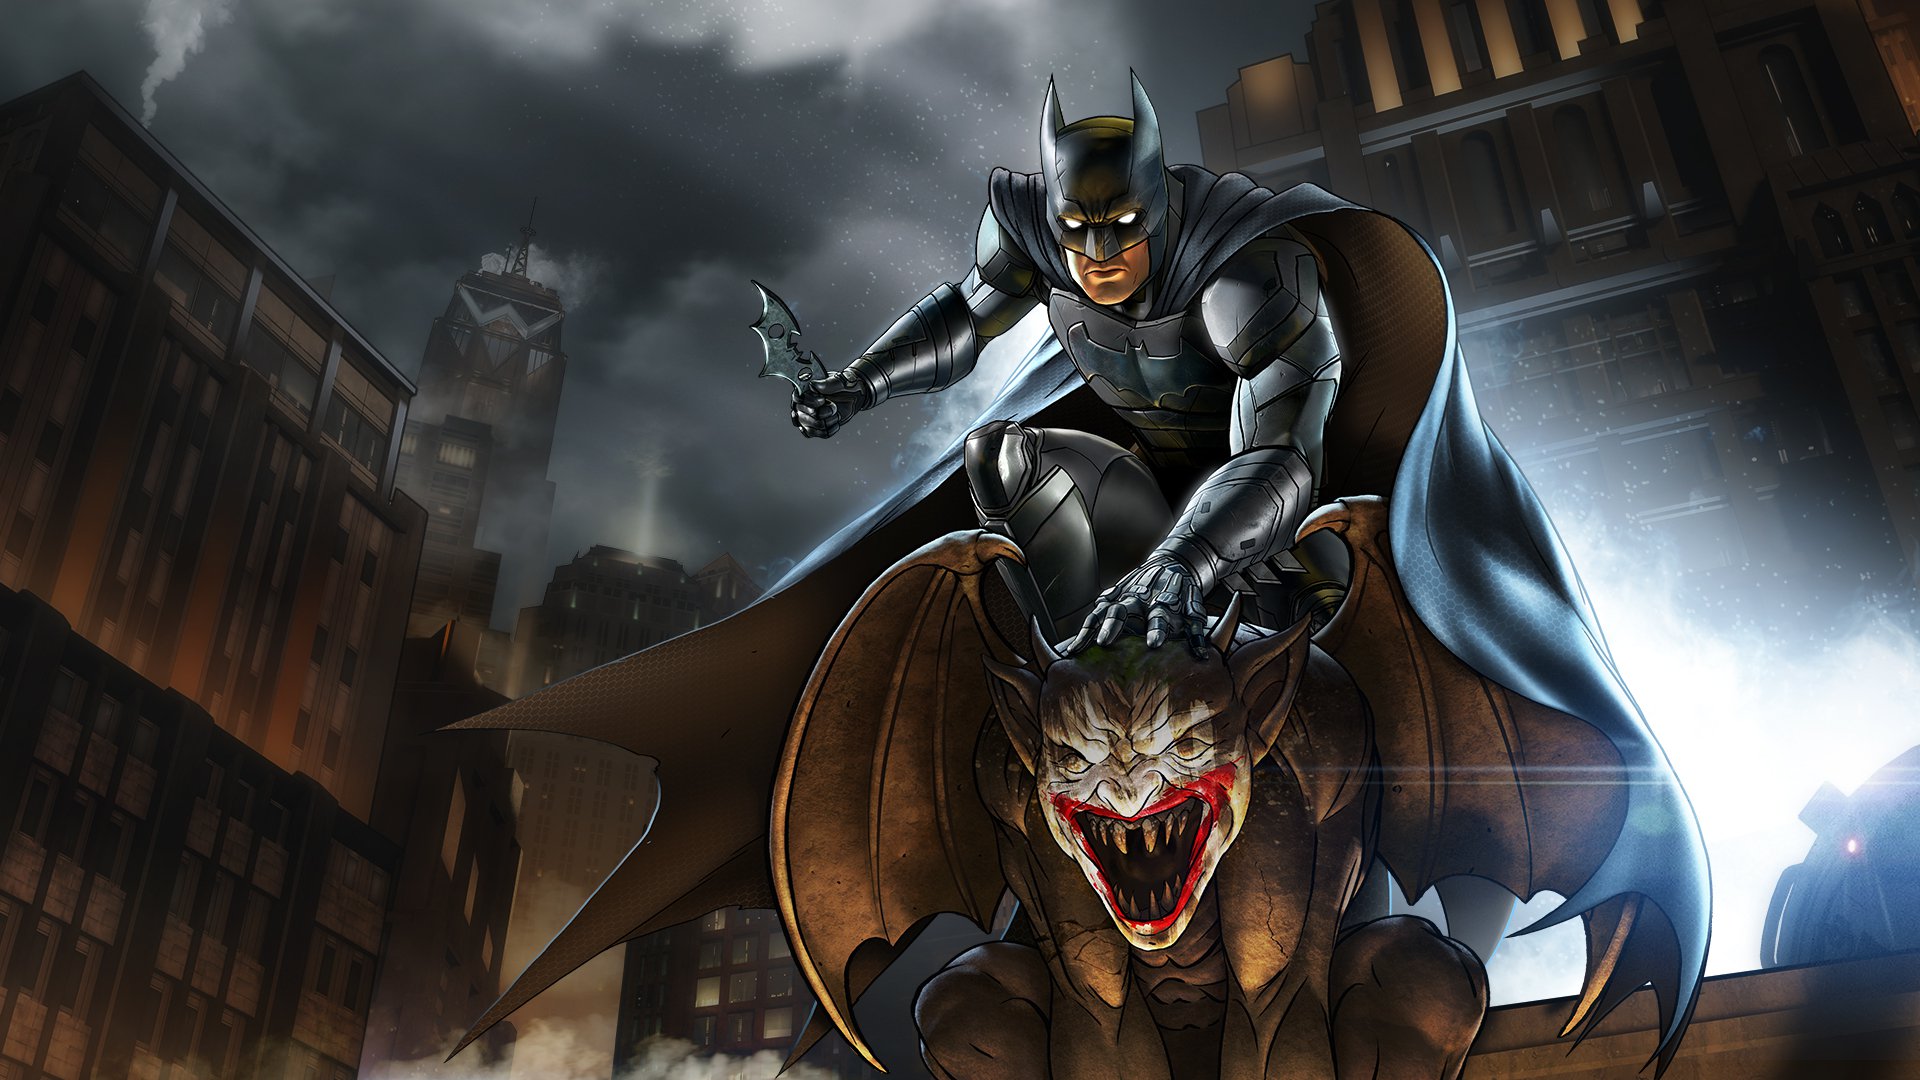 Скачать обои Бэтмен: Серия Telltale на телефон бесплатно